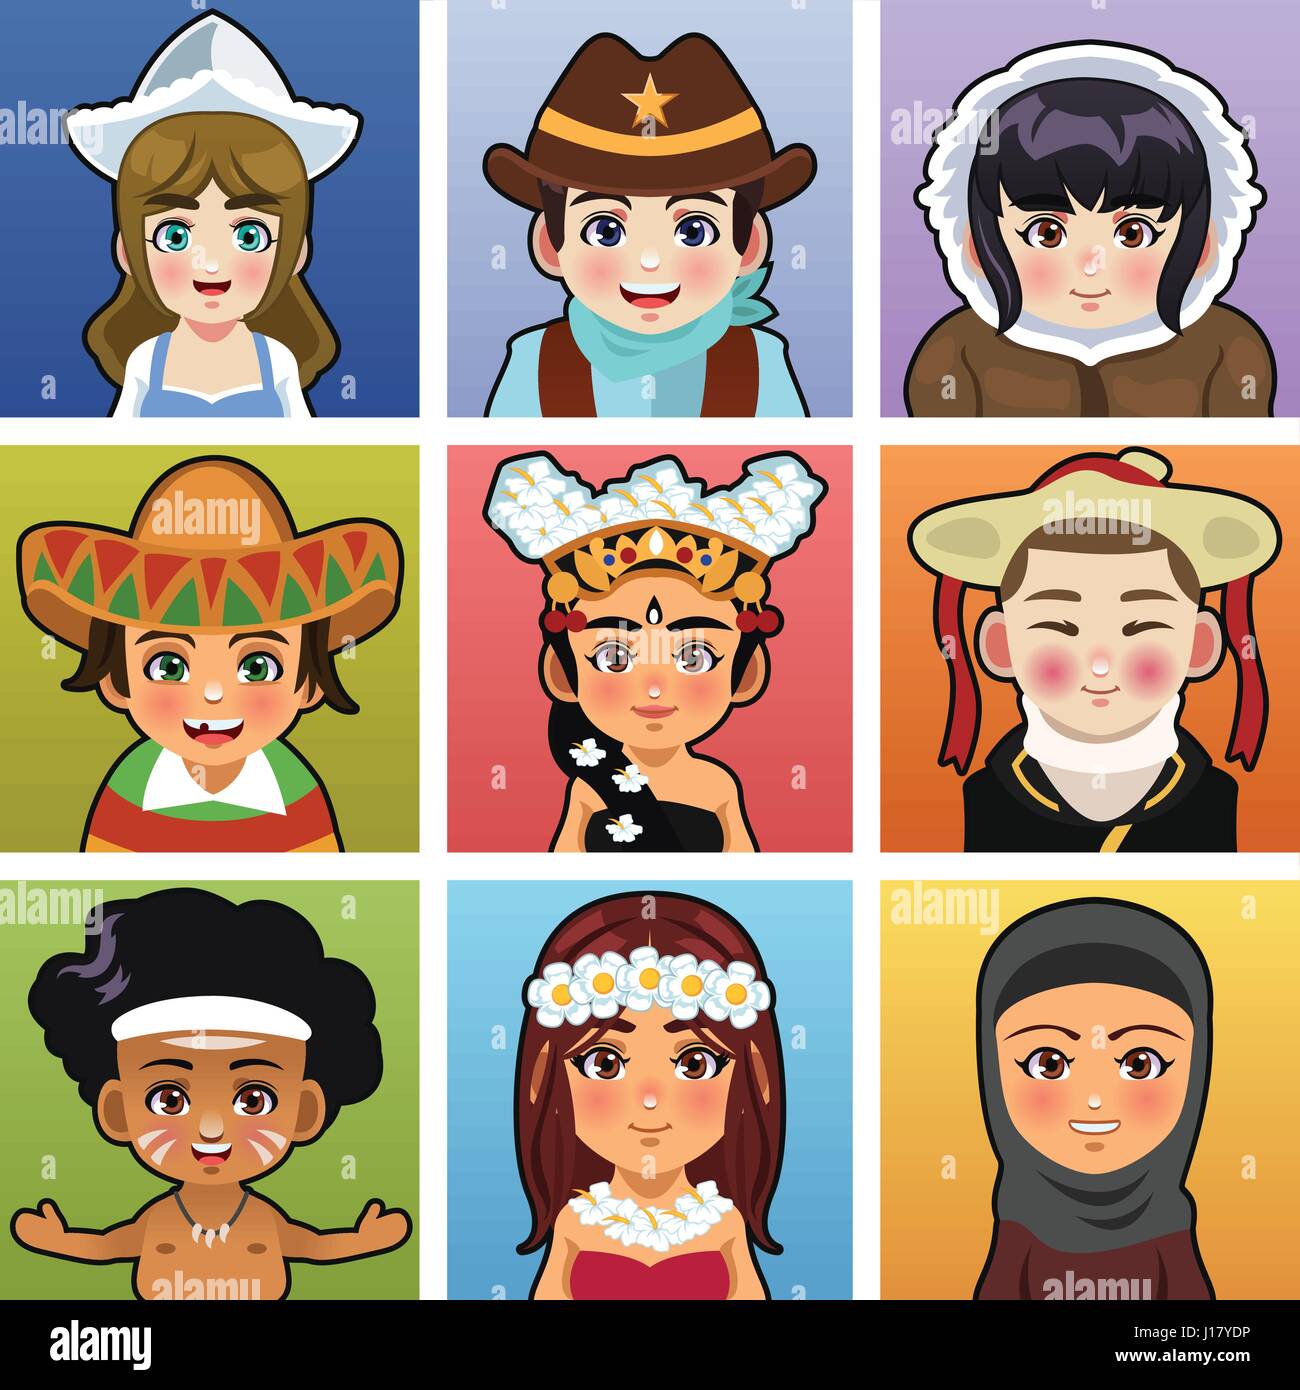 Un vecteur illustration d'enfants de différentes régions du monde portant des vêtements traditionnels Illustration de Vecteur